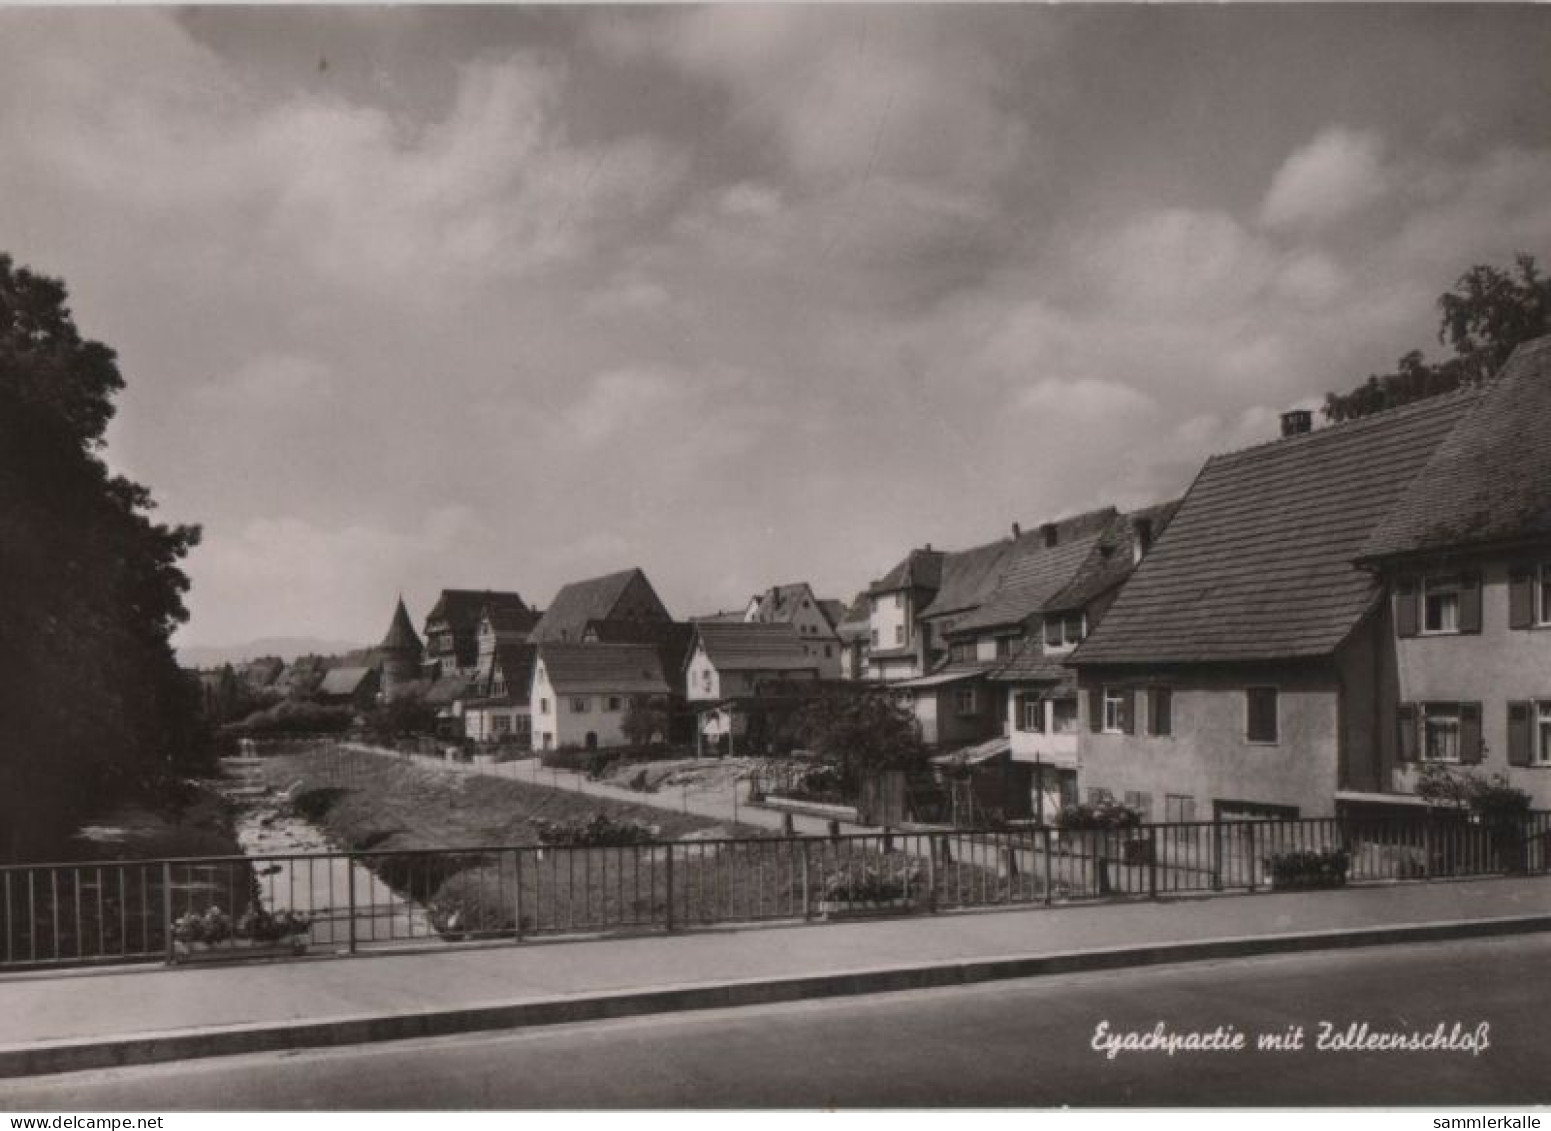 77866 - Balingen - Eyachpartie Mit Zollernschloss - Ca. 1965 - Balingen